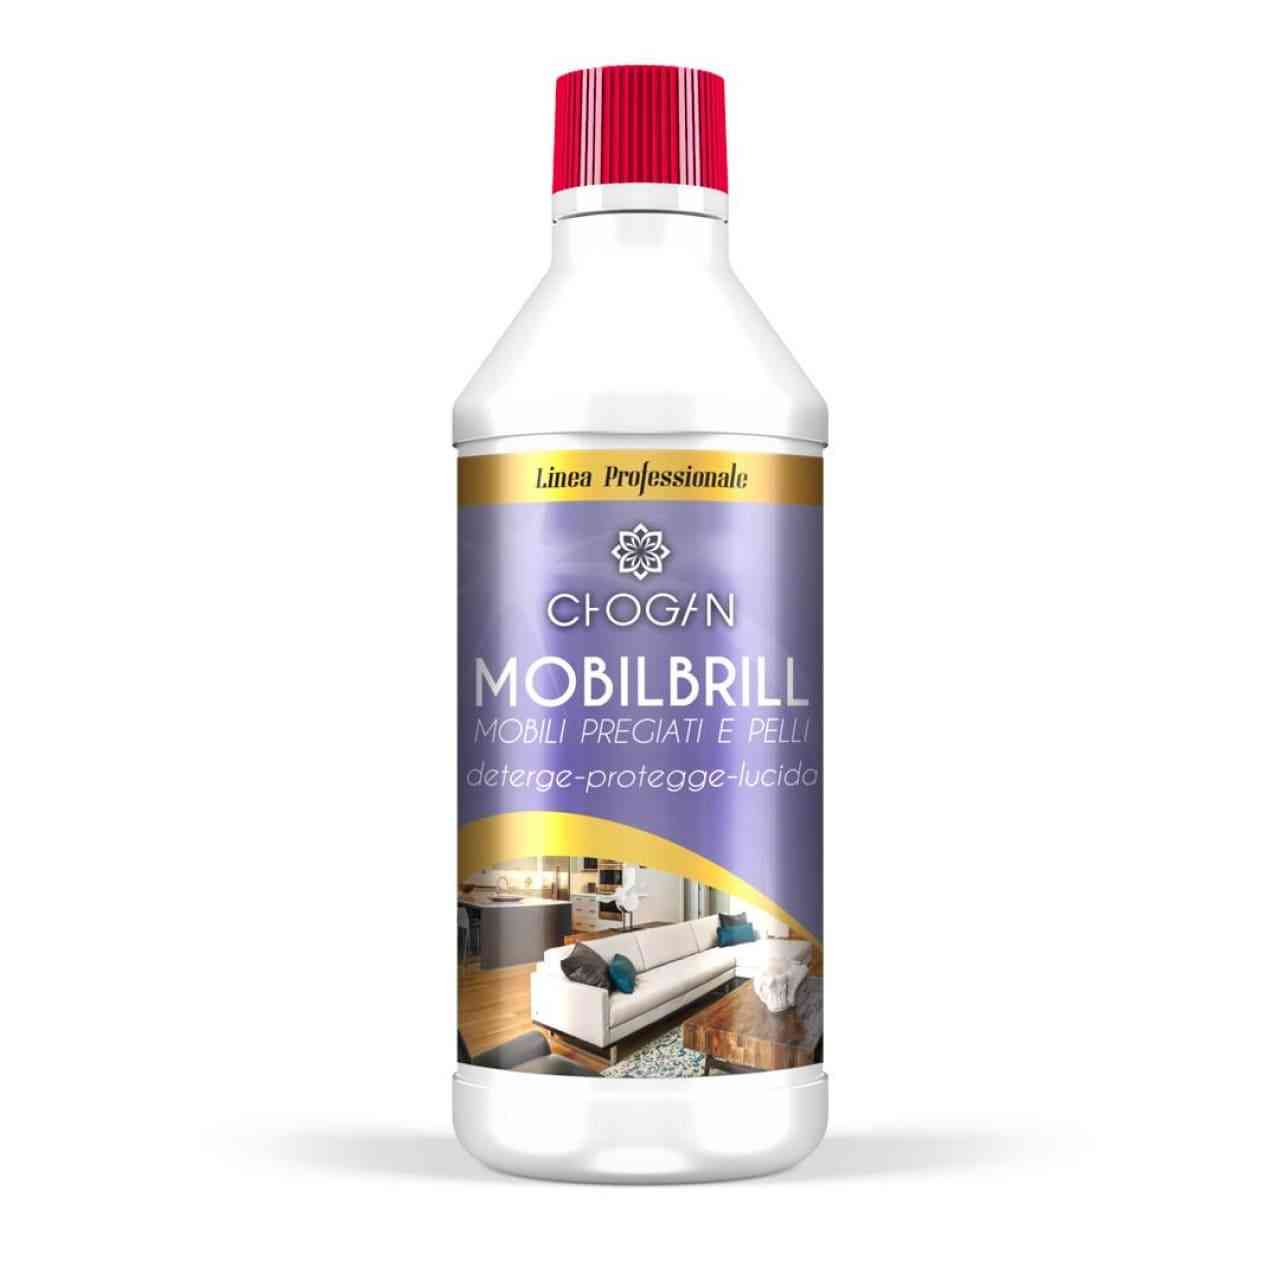 MOBILBRILL schonender Multiflächen-Reiniger mit Polierwirkung